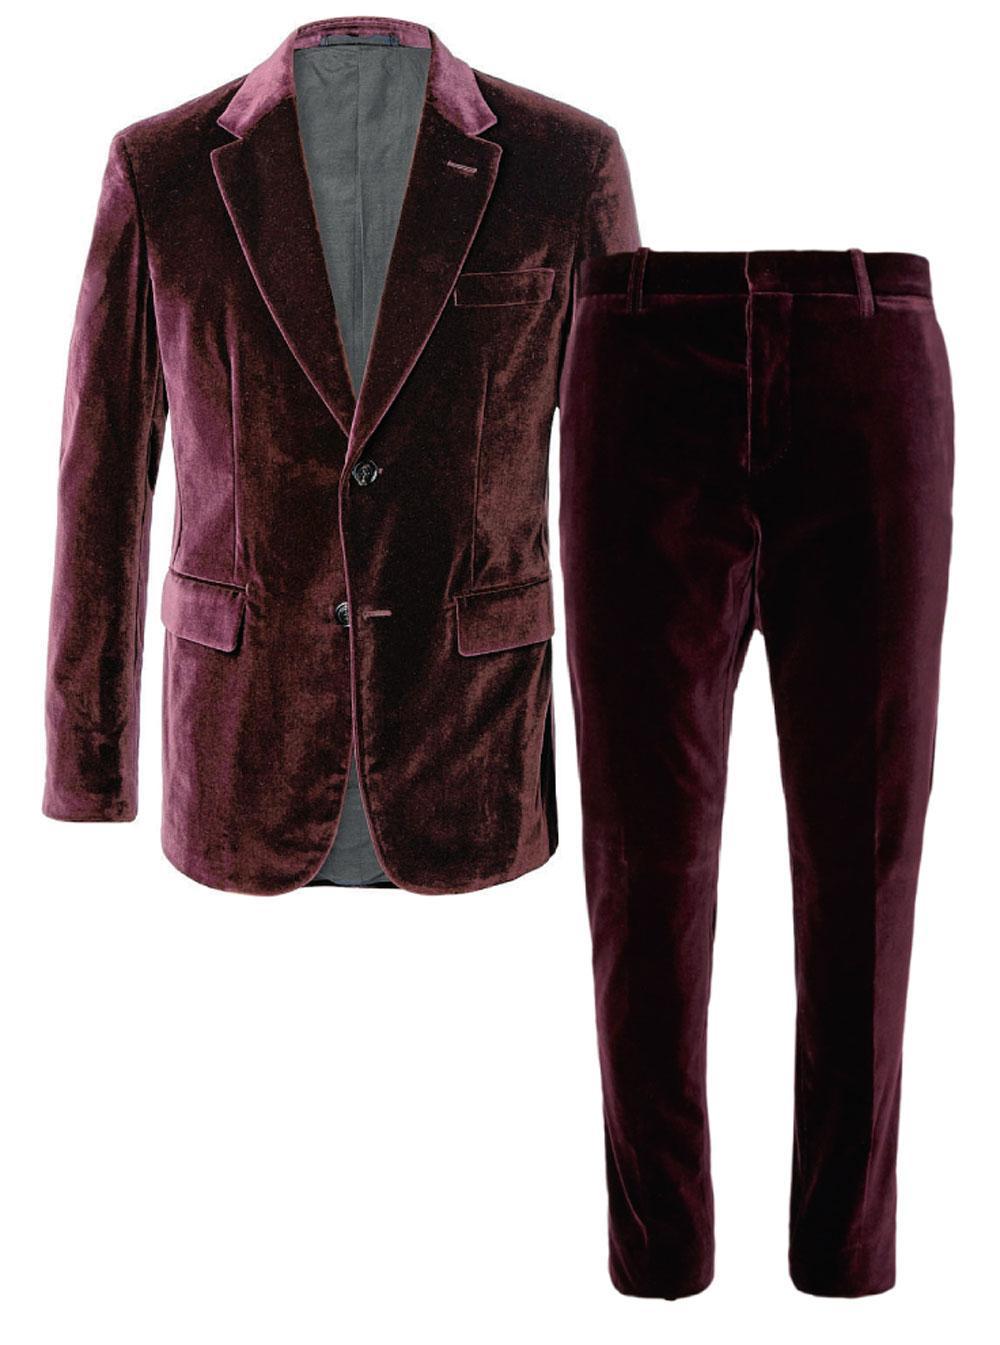 Veste et pantalon en velours de coton, Berluti, 2 600 et 800 euros.